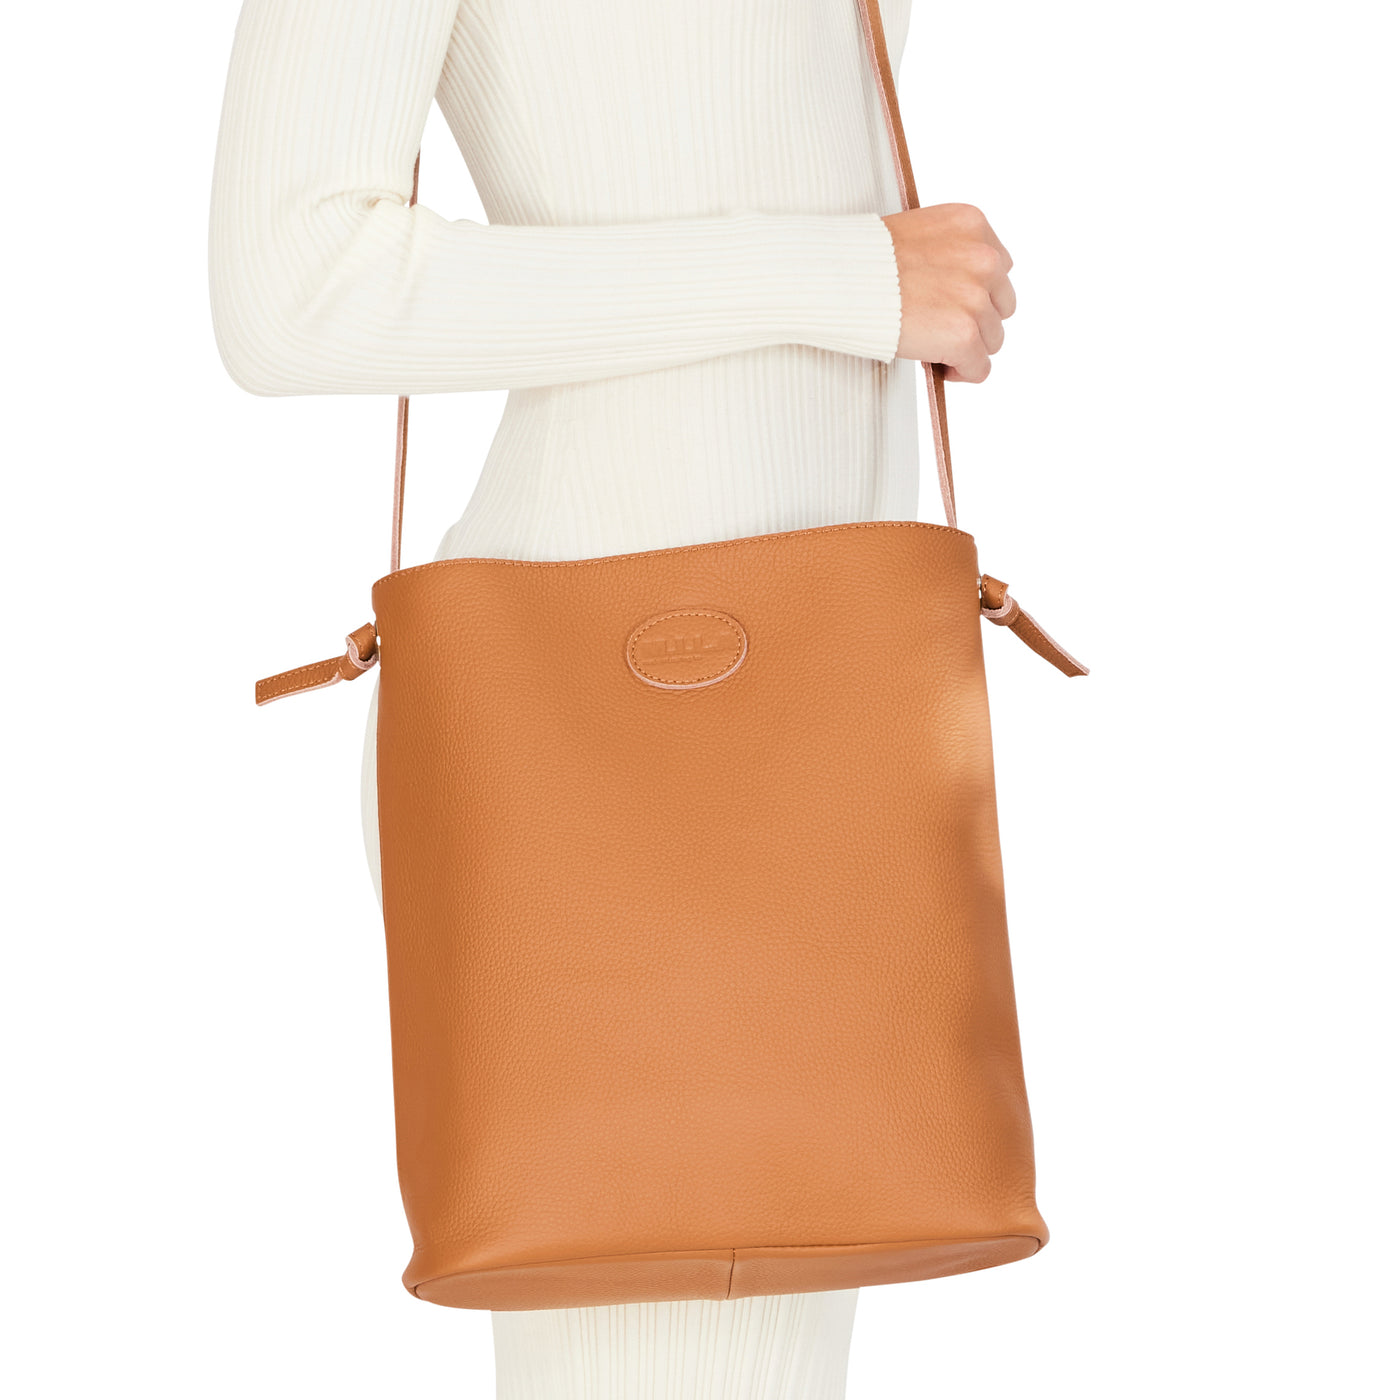 Mila Louise Shoulder Bags, Yellow (Safran): Handbags